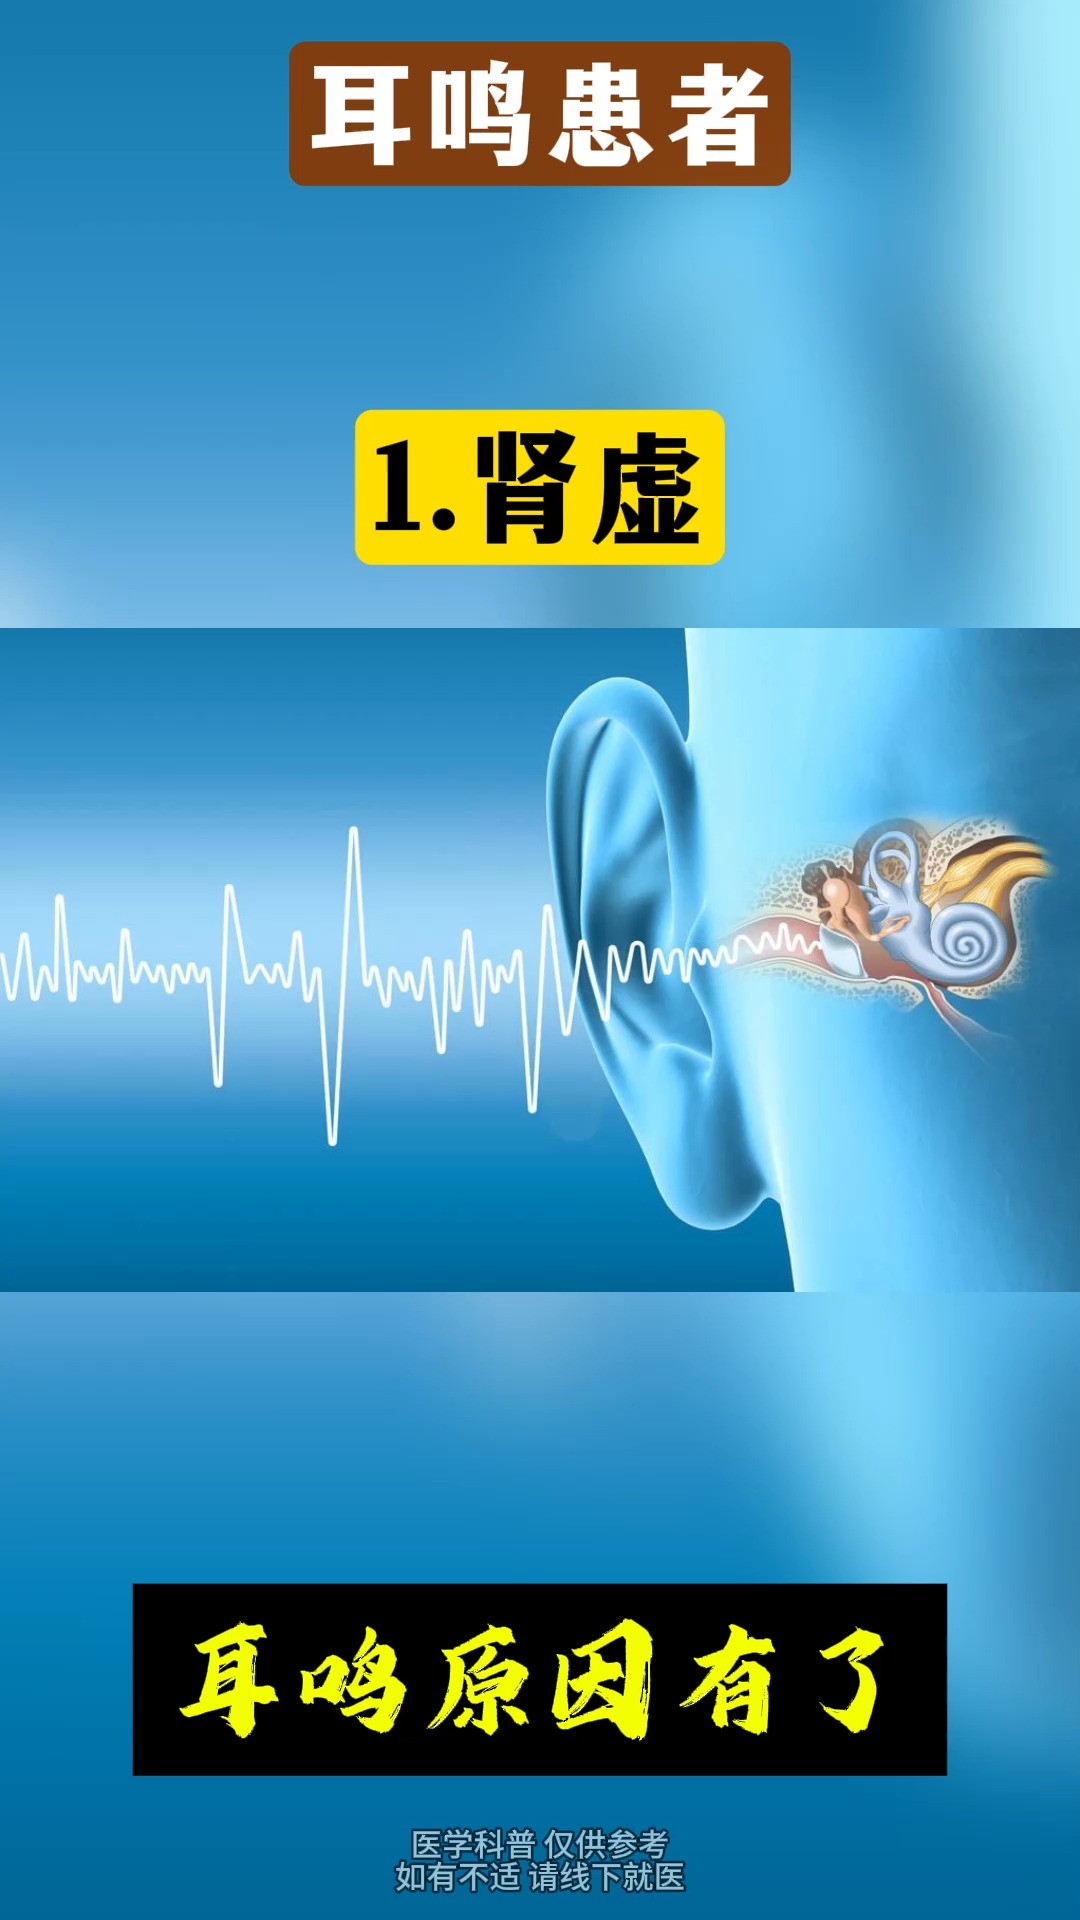 耳鸣患者要注意这三种声音
#耳鸣 #中医 